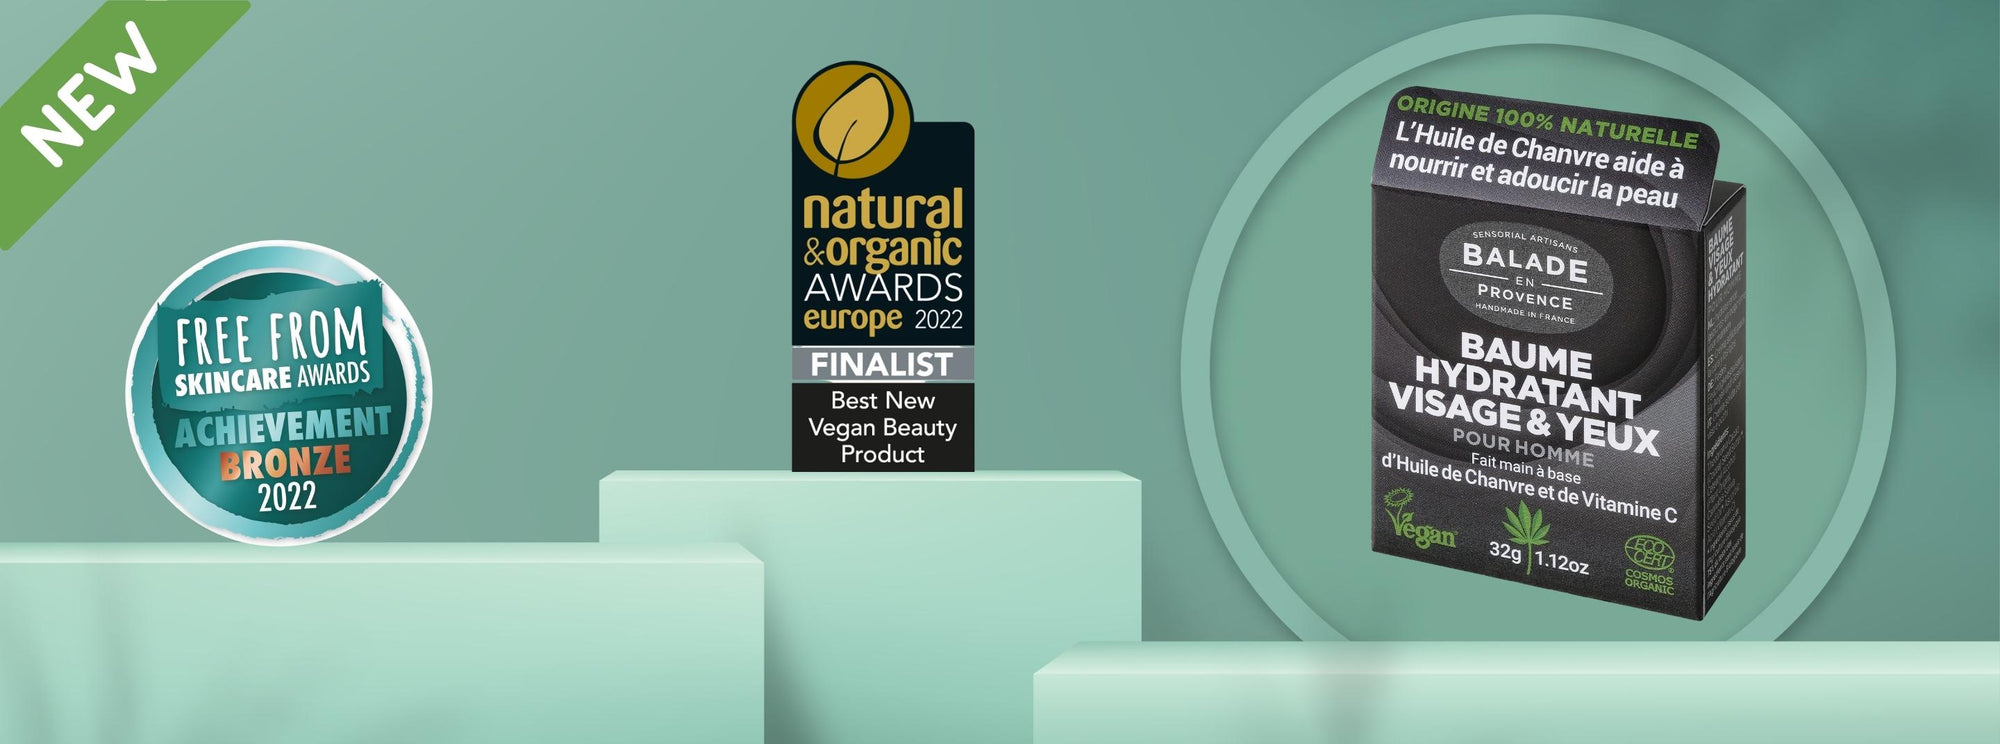 Le Baume hydratant Visage & Yeux pour Homme récompensé lors des Free From Skincare Awards